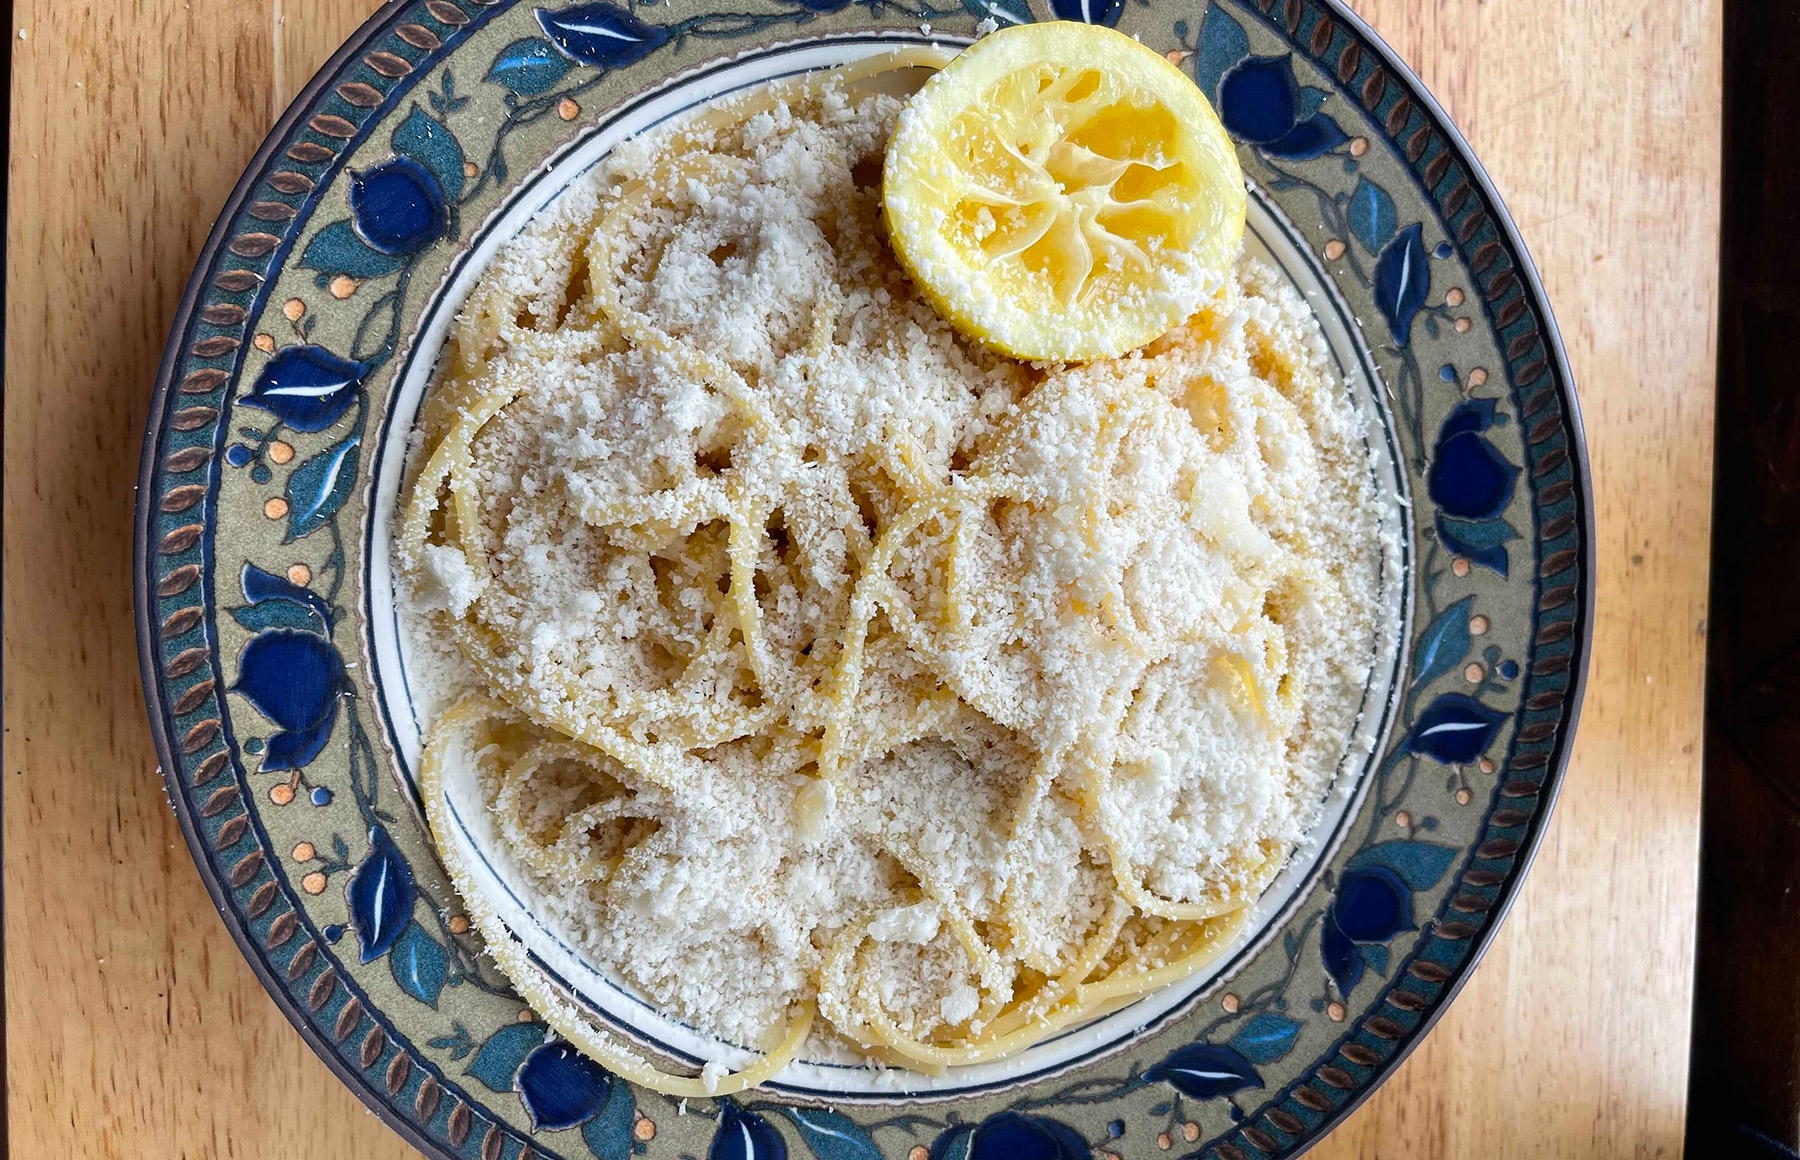 Pasta al limone: A tale of simplicity